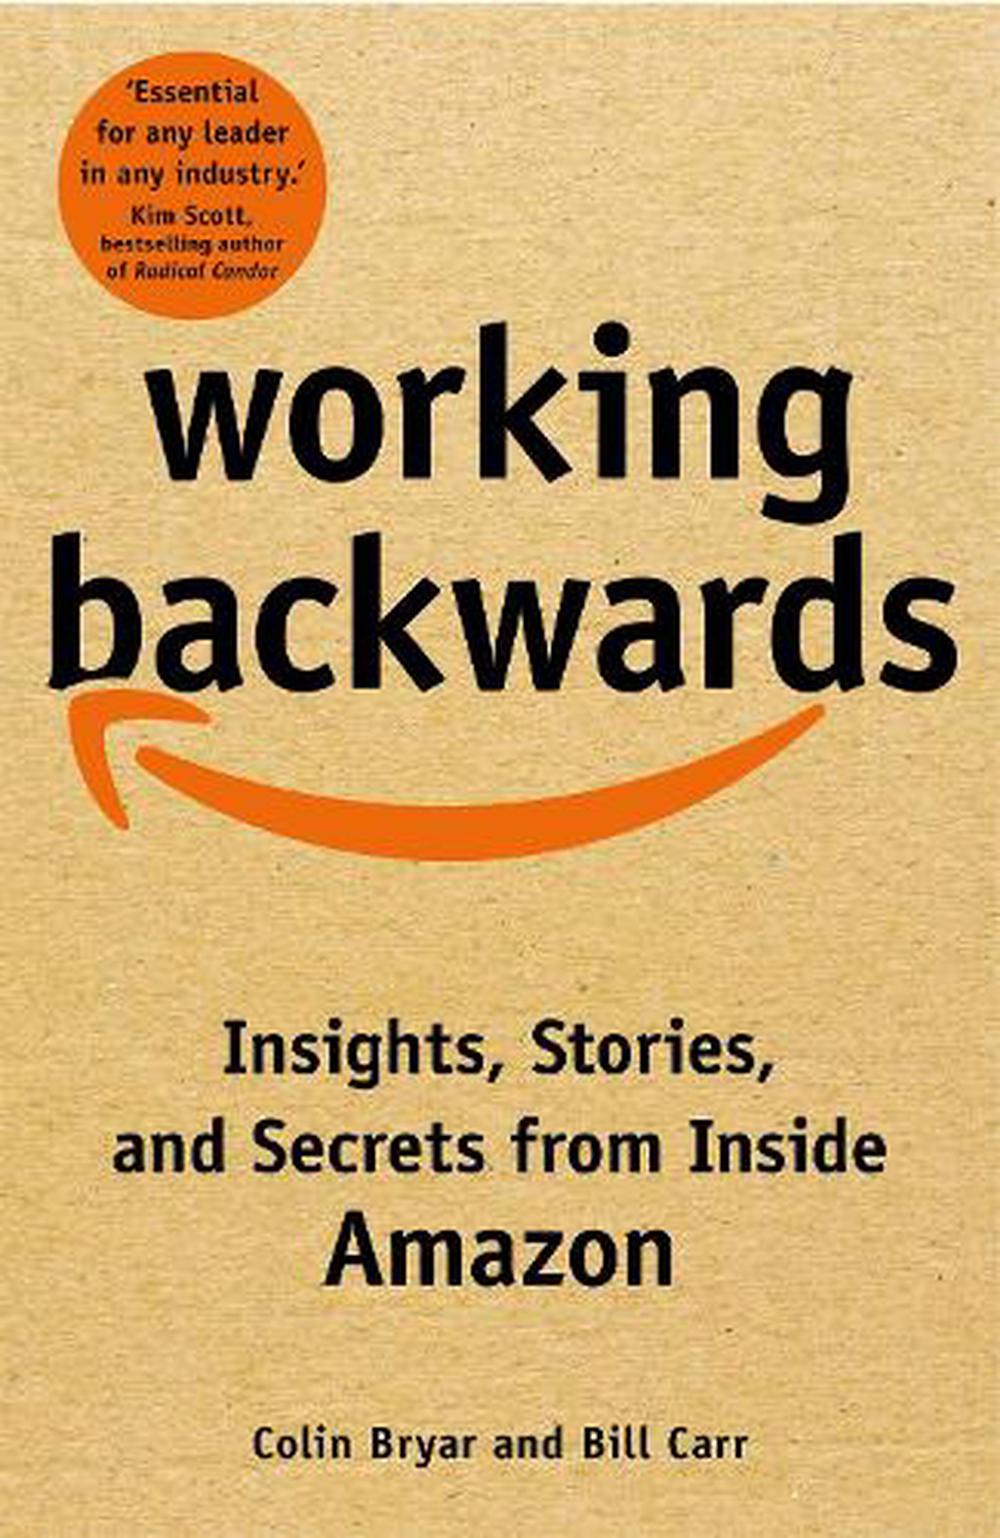 Working Backwards by Colin Bryar